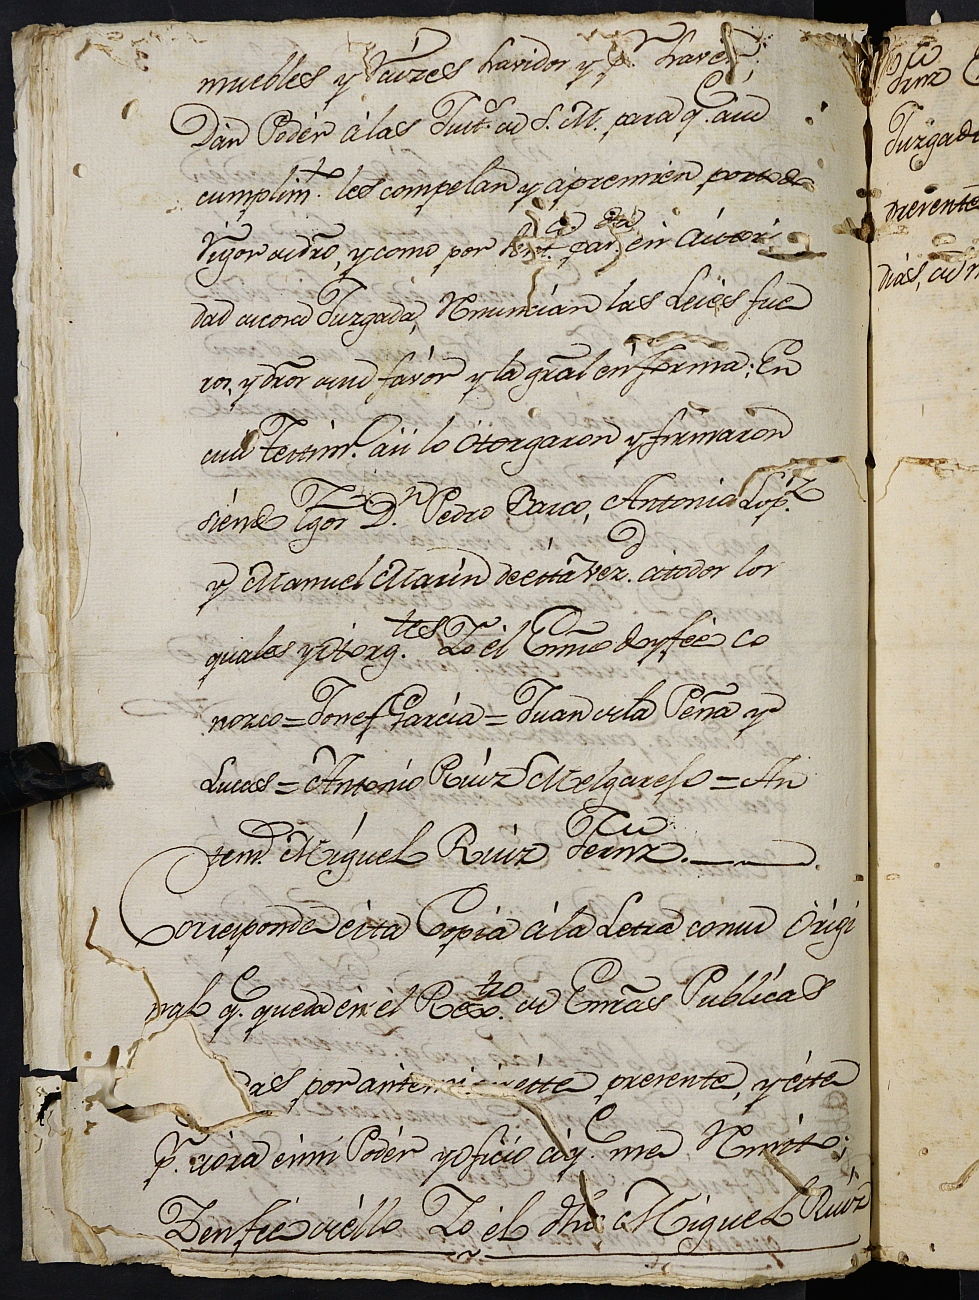 Registro de Agustín Carlos Roca, Cartagena: Escribano de Marina de 1808-1809